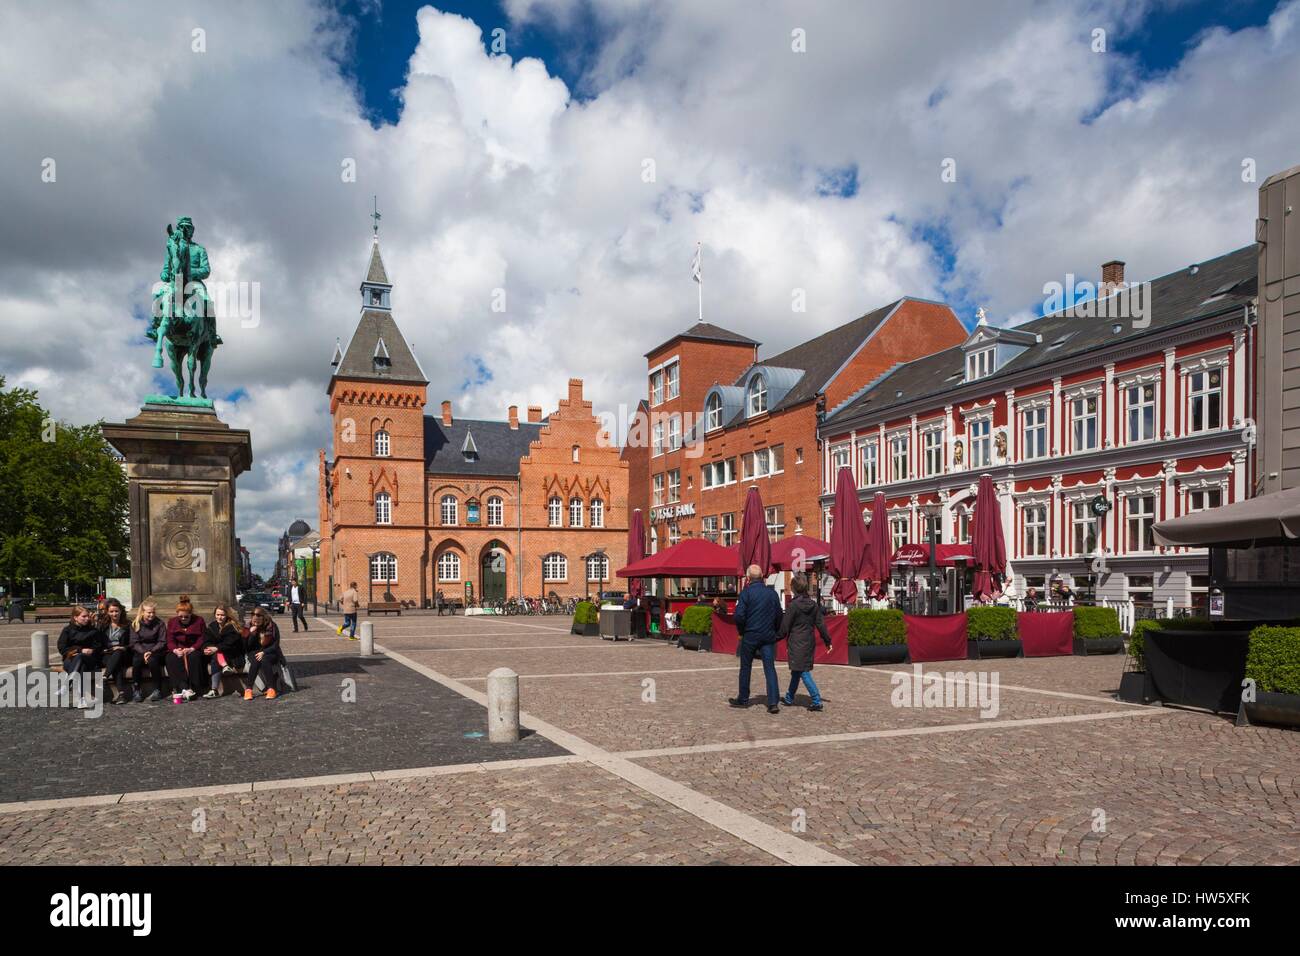 Denmark, Jutland, Esbjerg, Torvet, town square Stock Photo